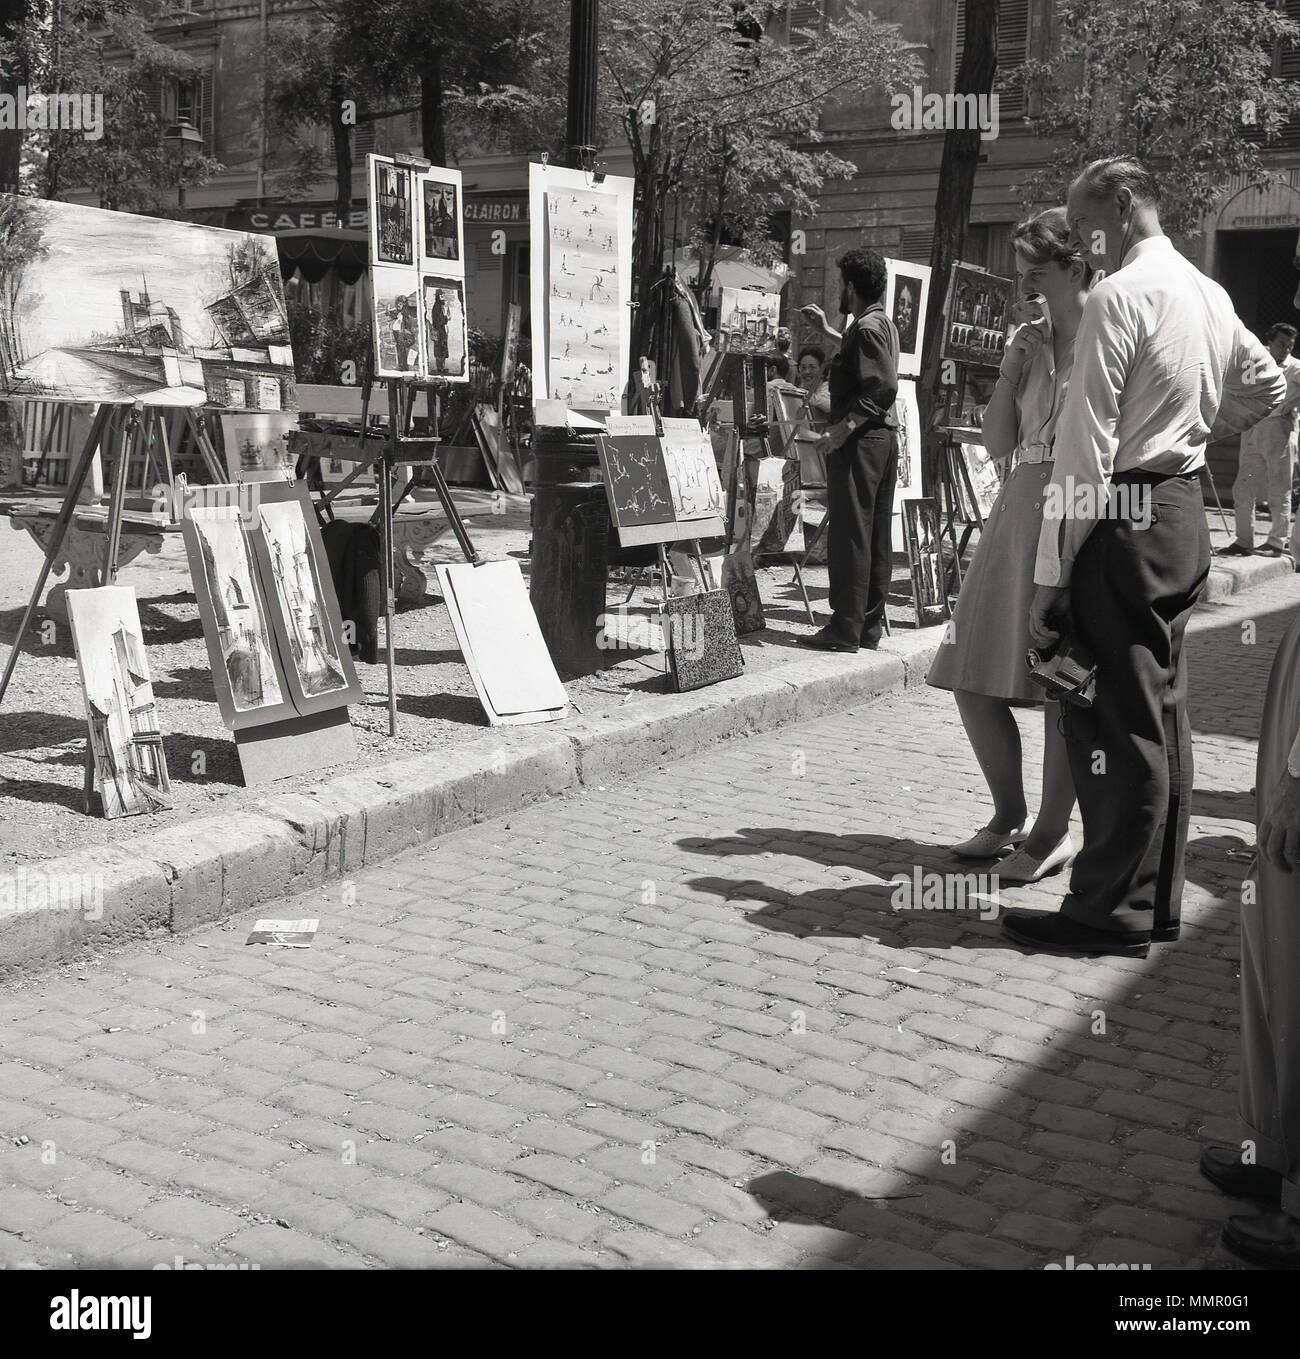 Années 1950, à la recherche à l'affiche d'art sur la place de la Place du Tertre à Montmartre, Paris, France. La région, dans la partie nord de la ville, est célèbre pour son histoire de l'art et les artistes de rue utiliser la place principale de créer et d'afficher leur travail. Banque D'Images